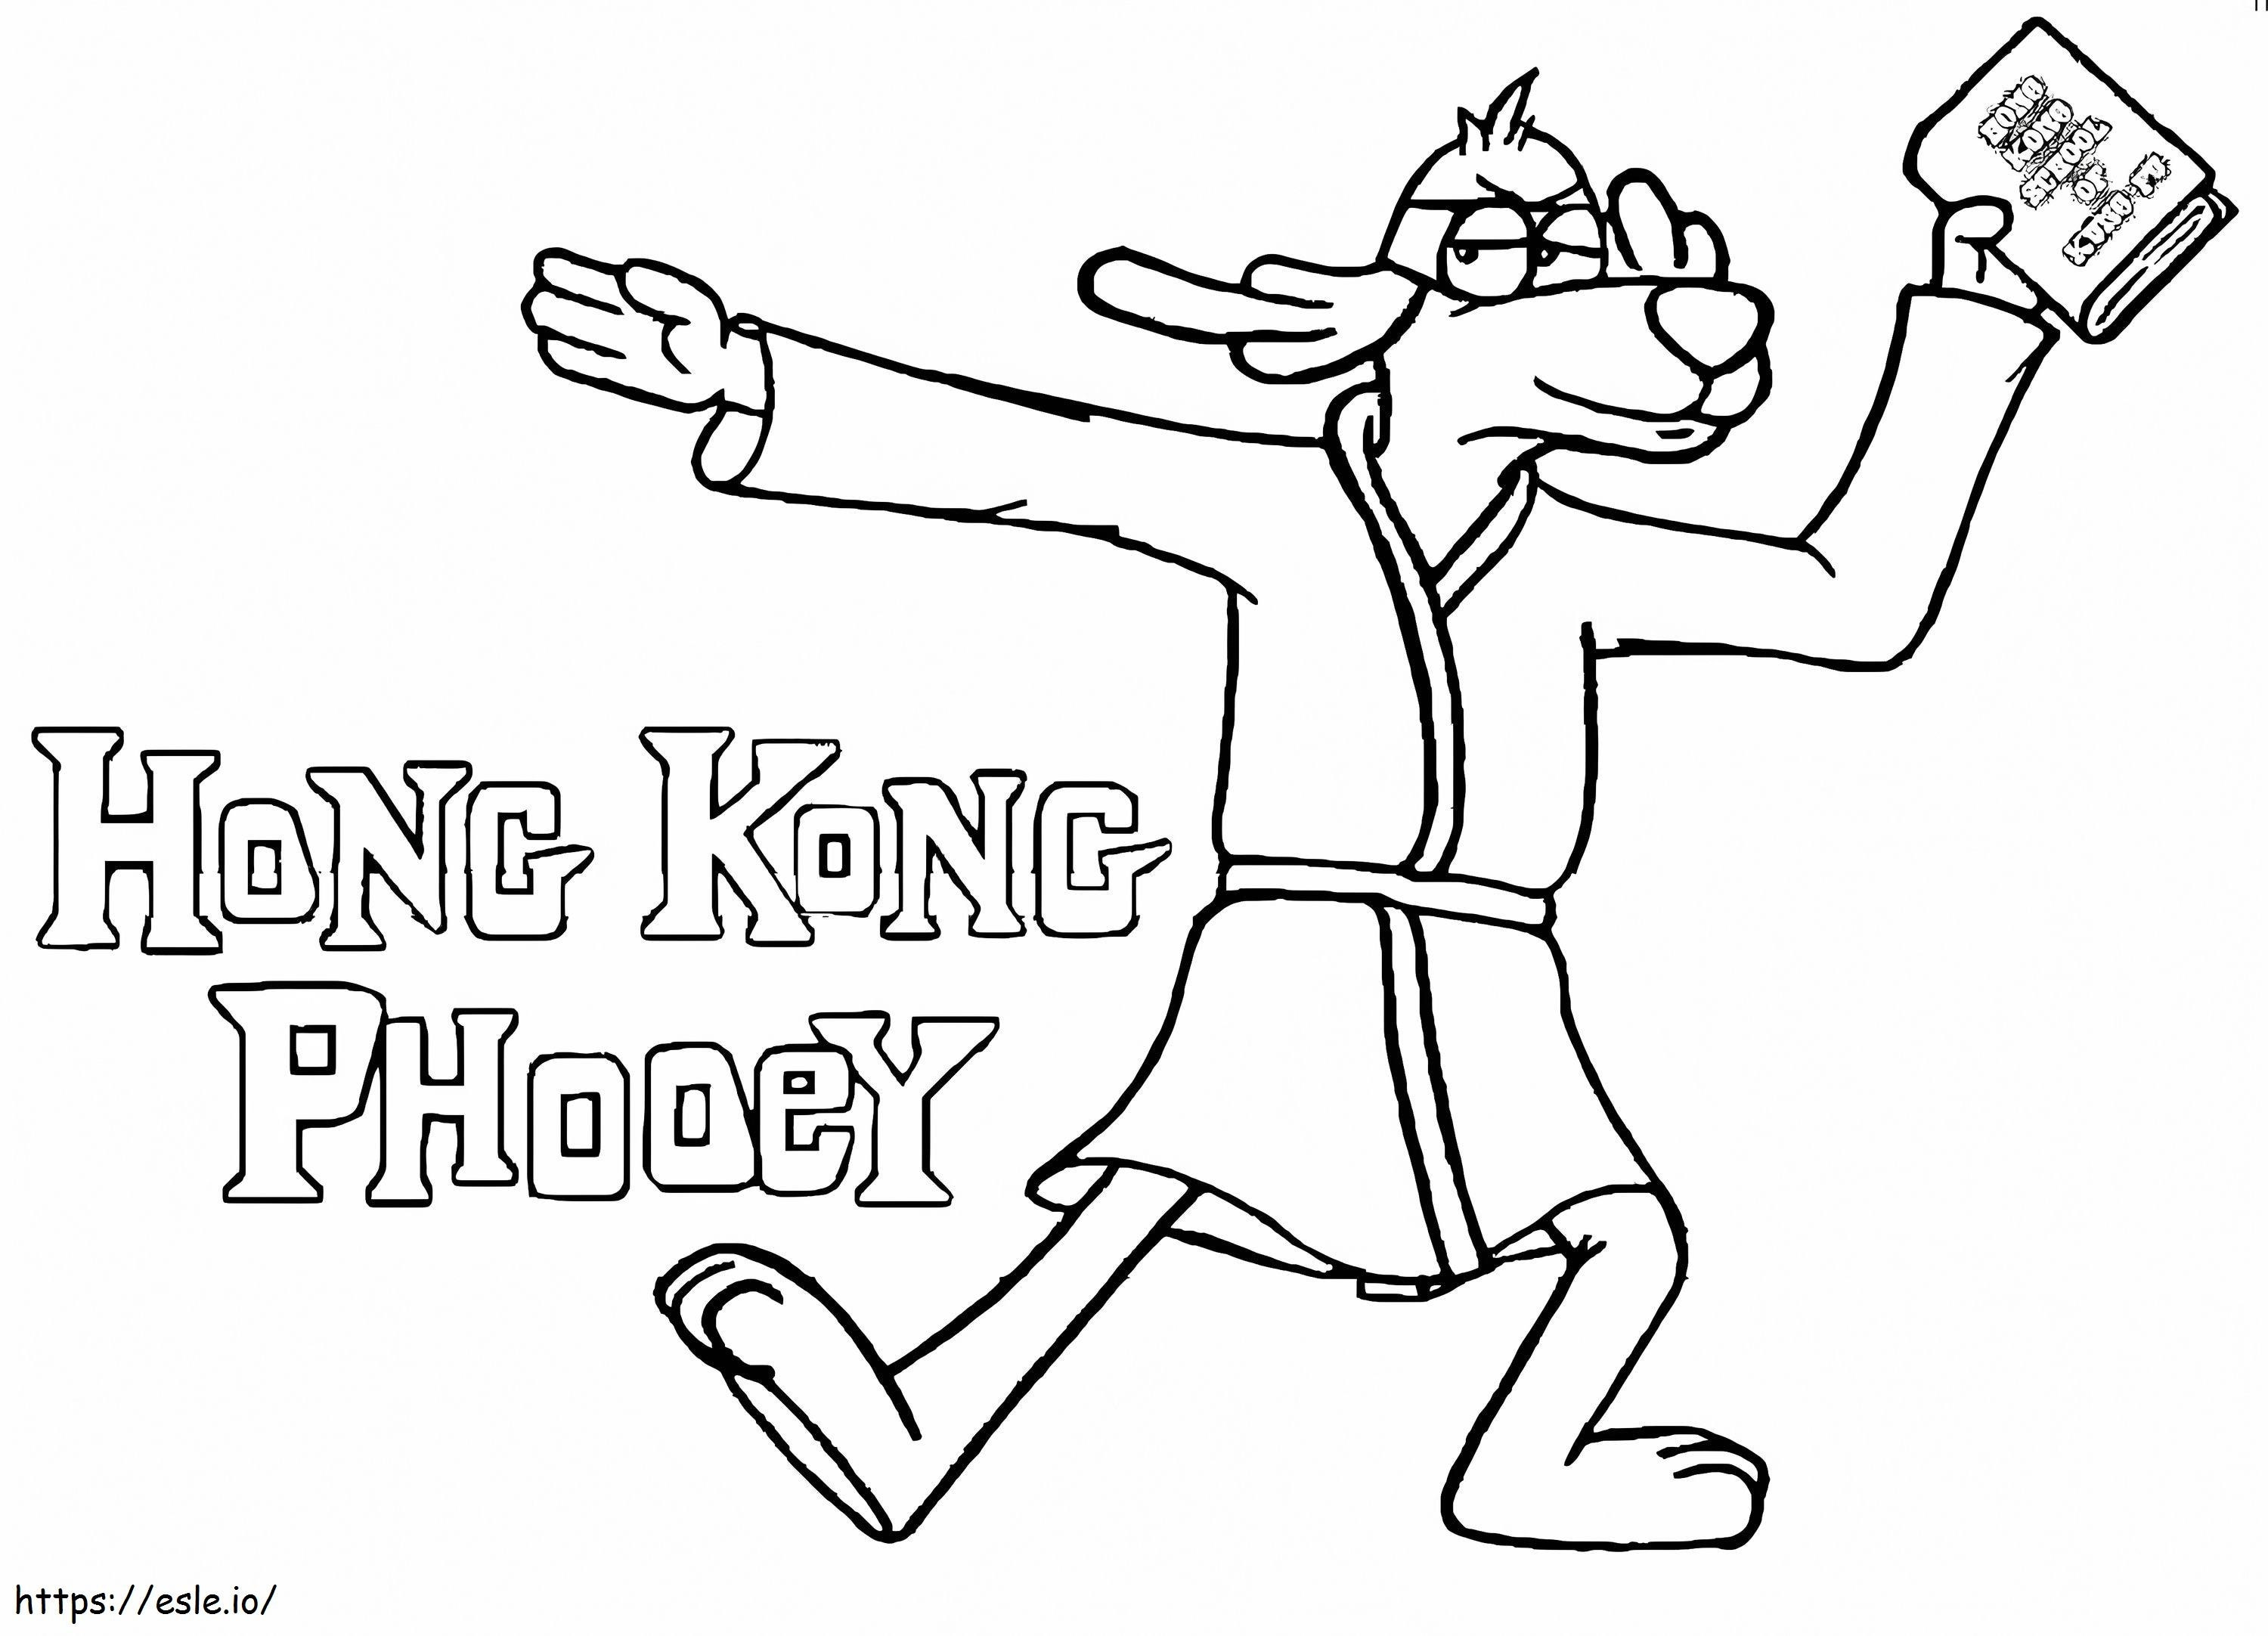 Hong Kong Phooey com um livro para colorir